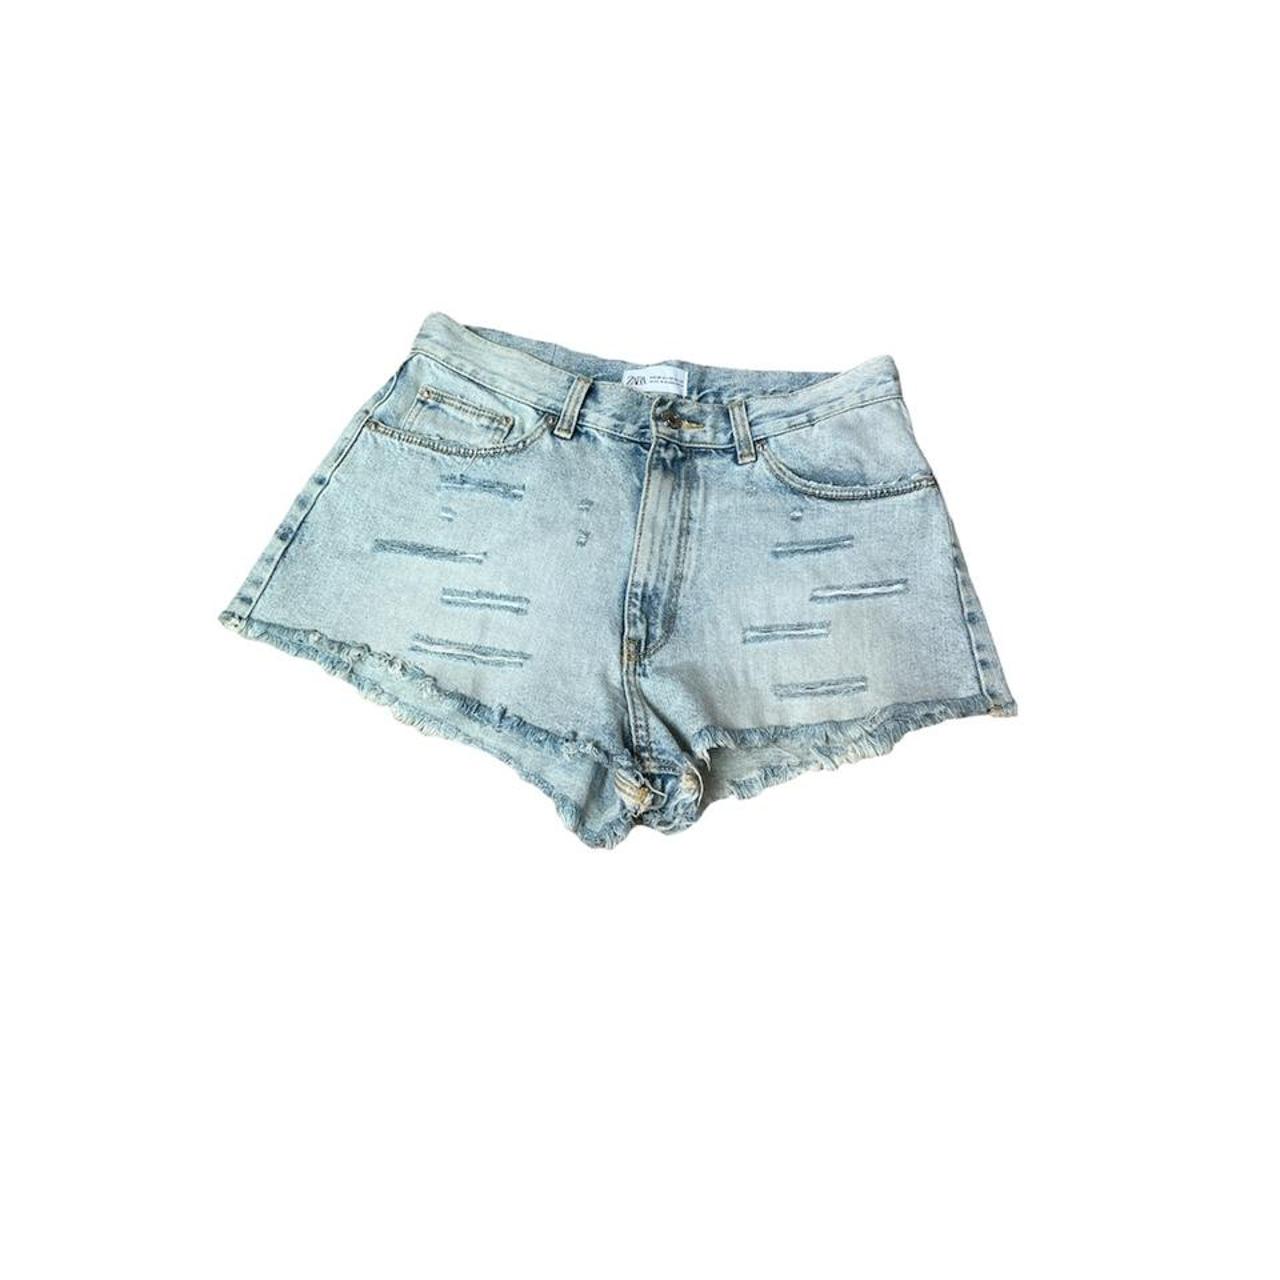 ZARA - light blue denim shorts size: 6 (4.25